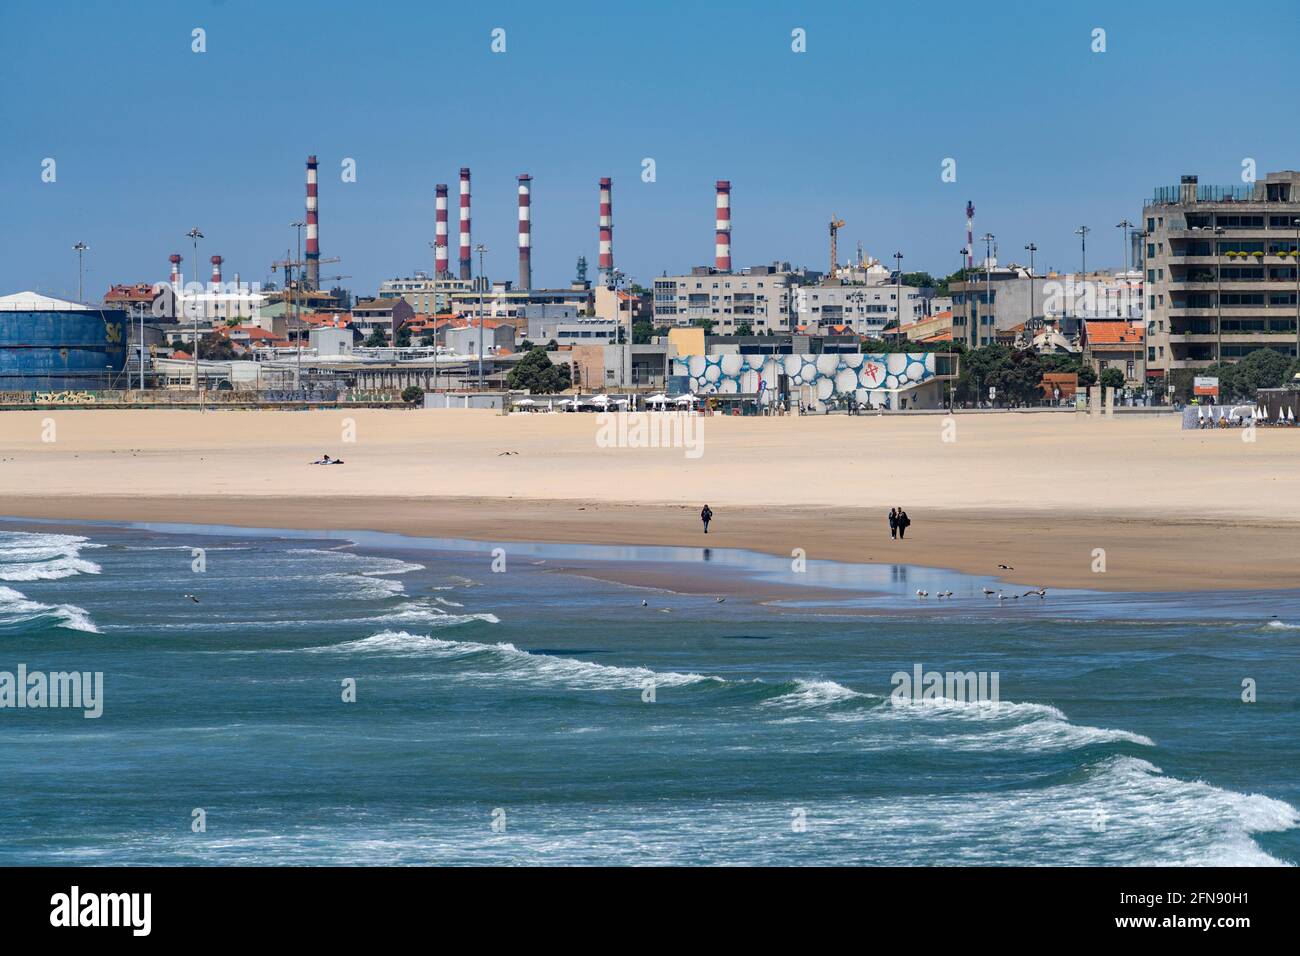 Am Strand von Matosinhos am Atlantik und Ölraffinerie, Matosinhos bei Porto, Portugal, Europa | Atlantic Matosinhos Beach and oil Refinery, Matosin Foto Stock